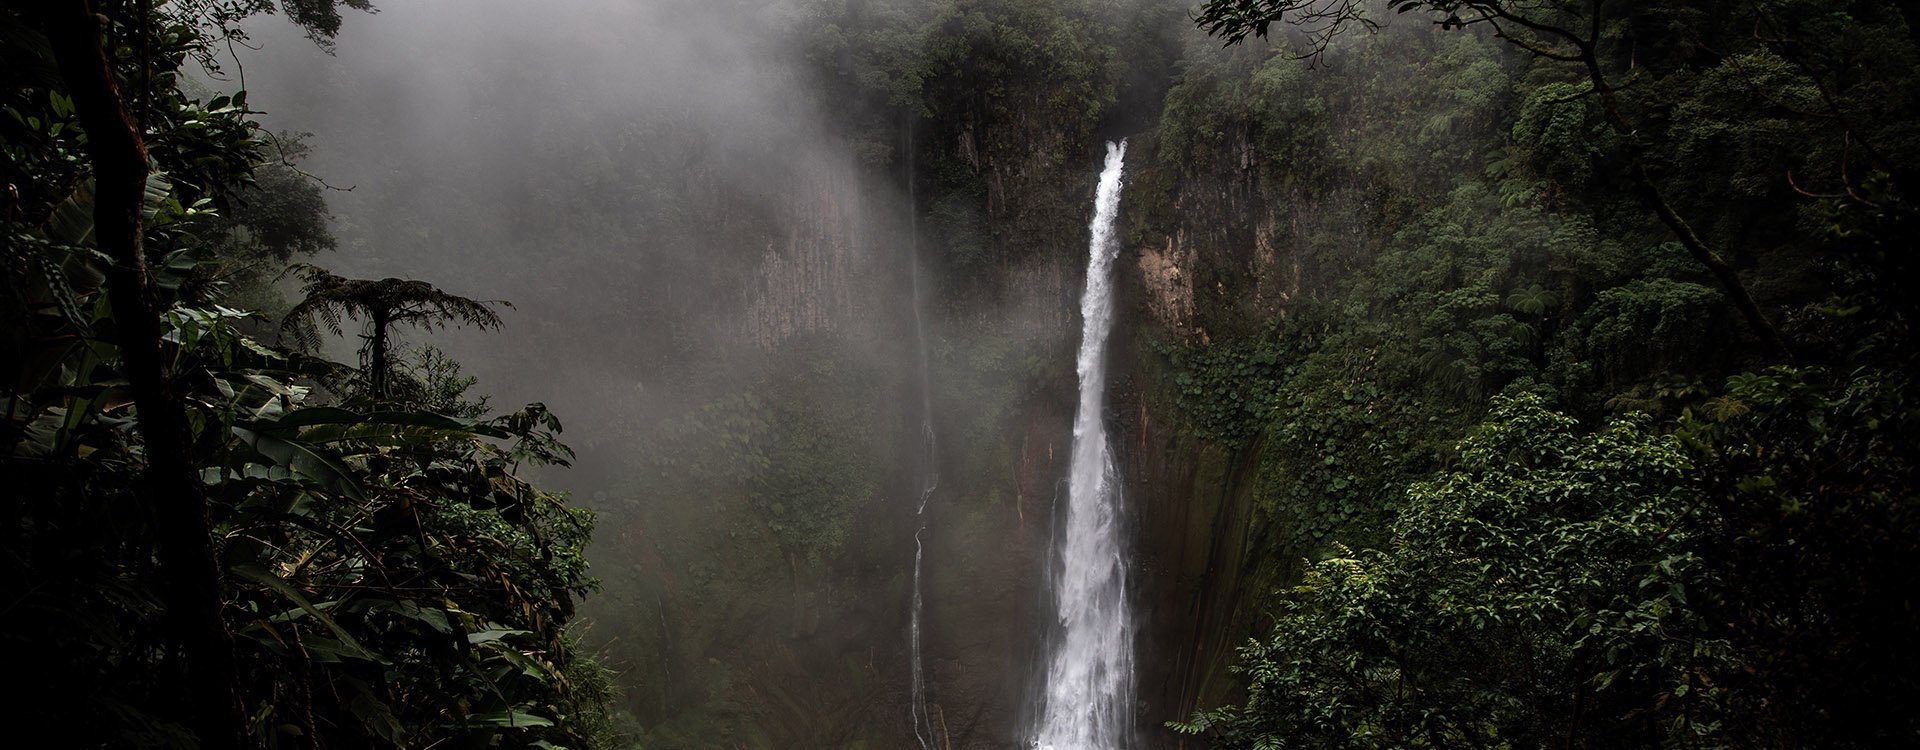 Catarata del Toro waterfall in Central Valley of Costa Rica